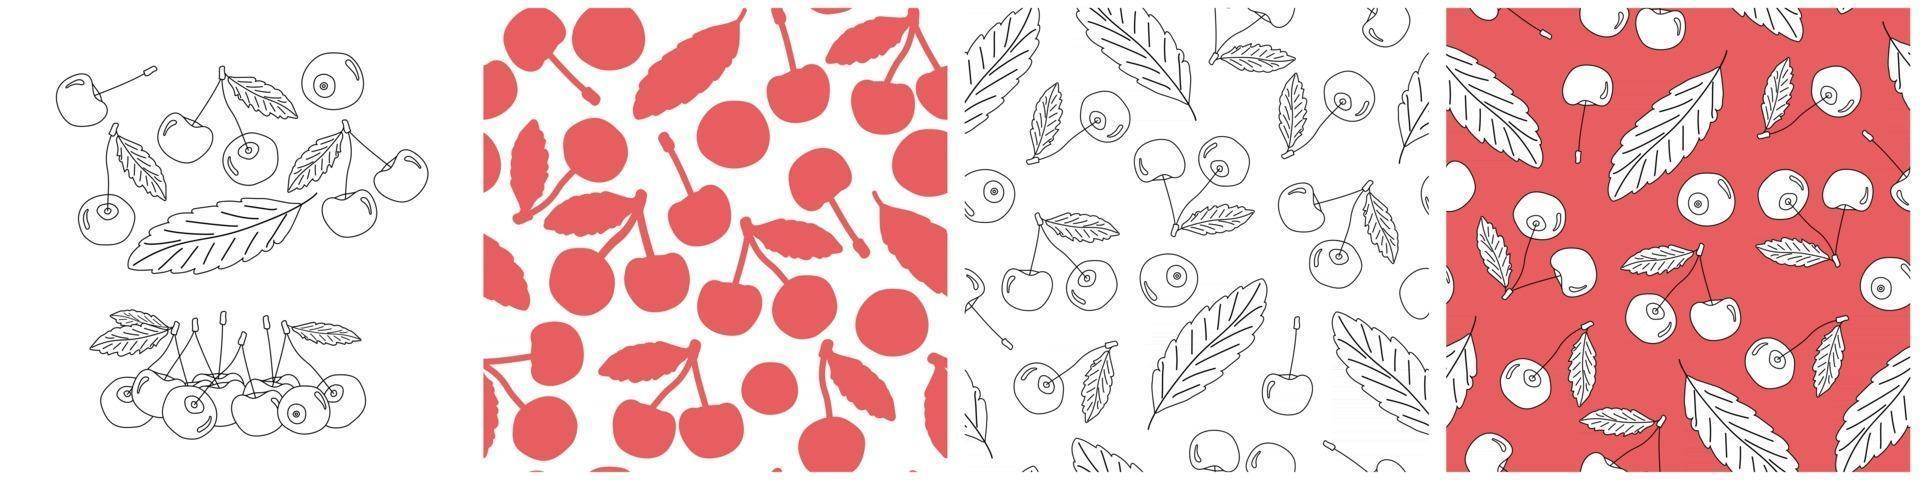 uppsättning kontur och silhuett vektor sömlösa mönster av körsbär. doodle cartoon isolerade handritad illustration av bär i vita, svarta och röda färger